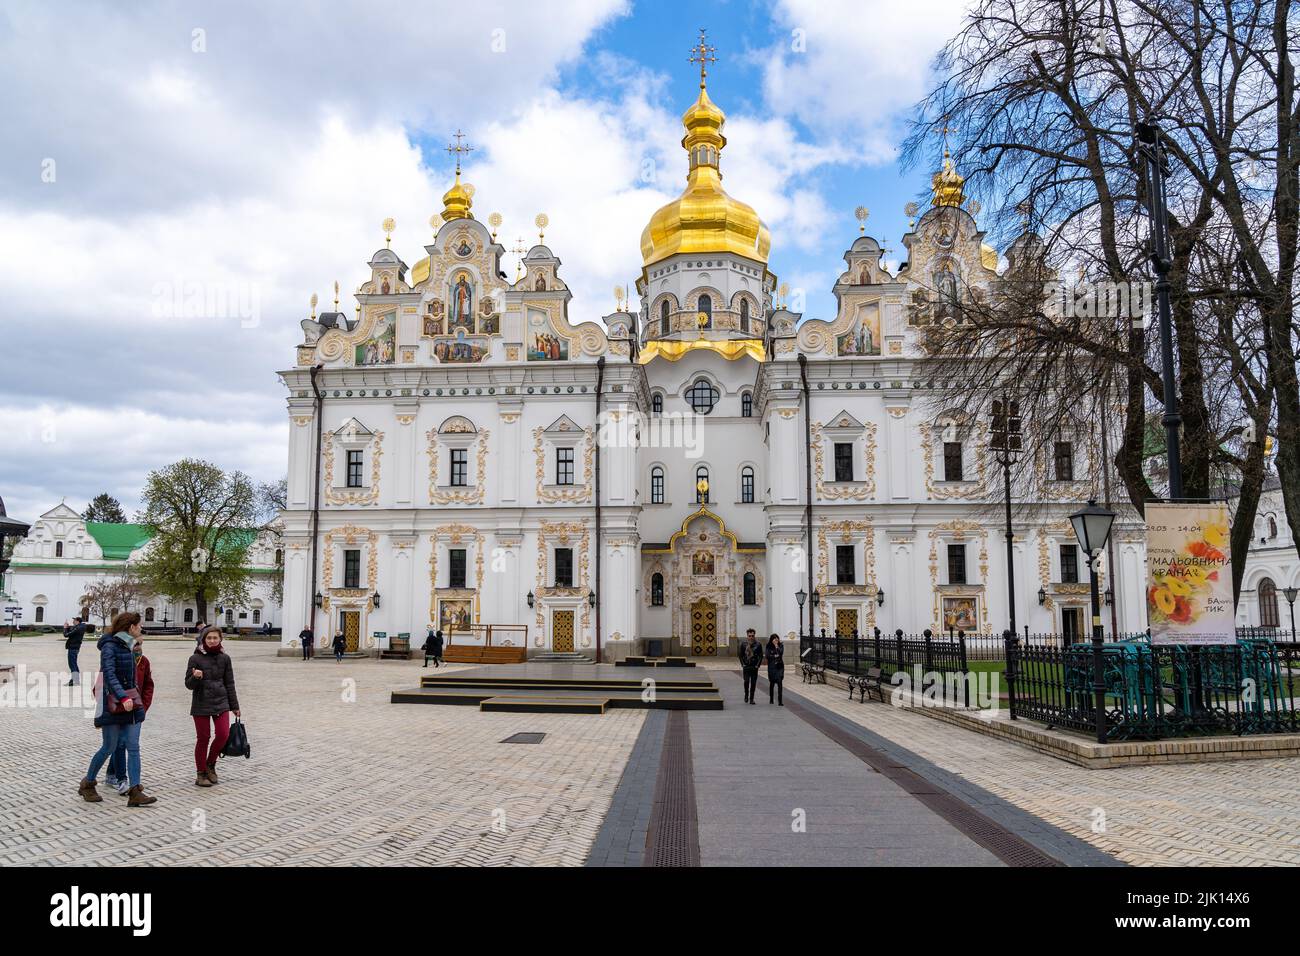 Cathédrale Sainte-Dormition de l'église orthodoxe ukrainienne, Kiev (Kiev), Ukraine, Europe Banque D'Images